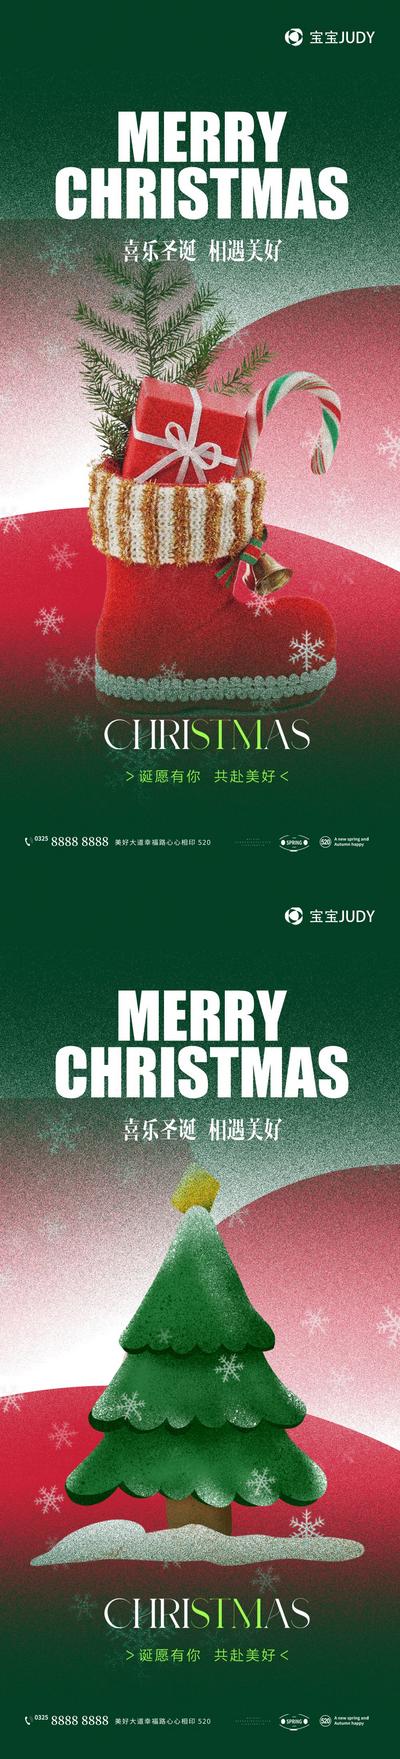 【南门网】广告 海报 节日 圣诞 新年 元旦 节日海报 圣诞树 绿色 品牌 礼盒 彩带